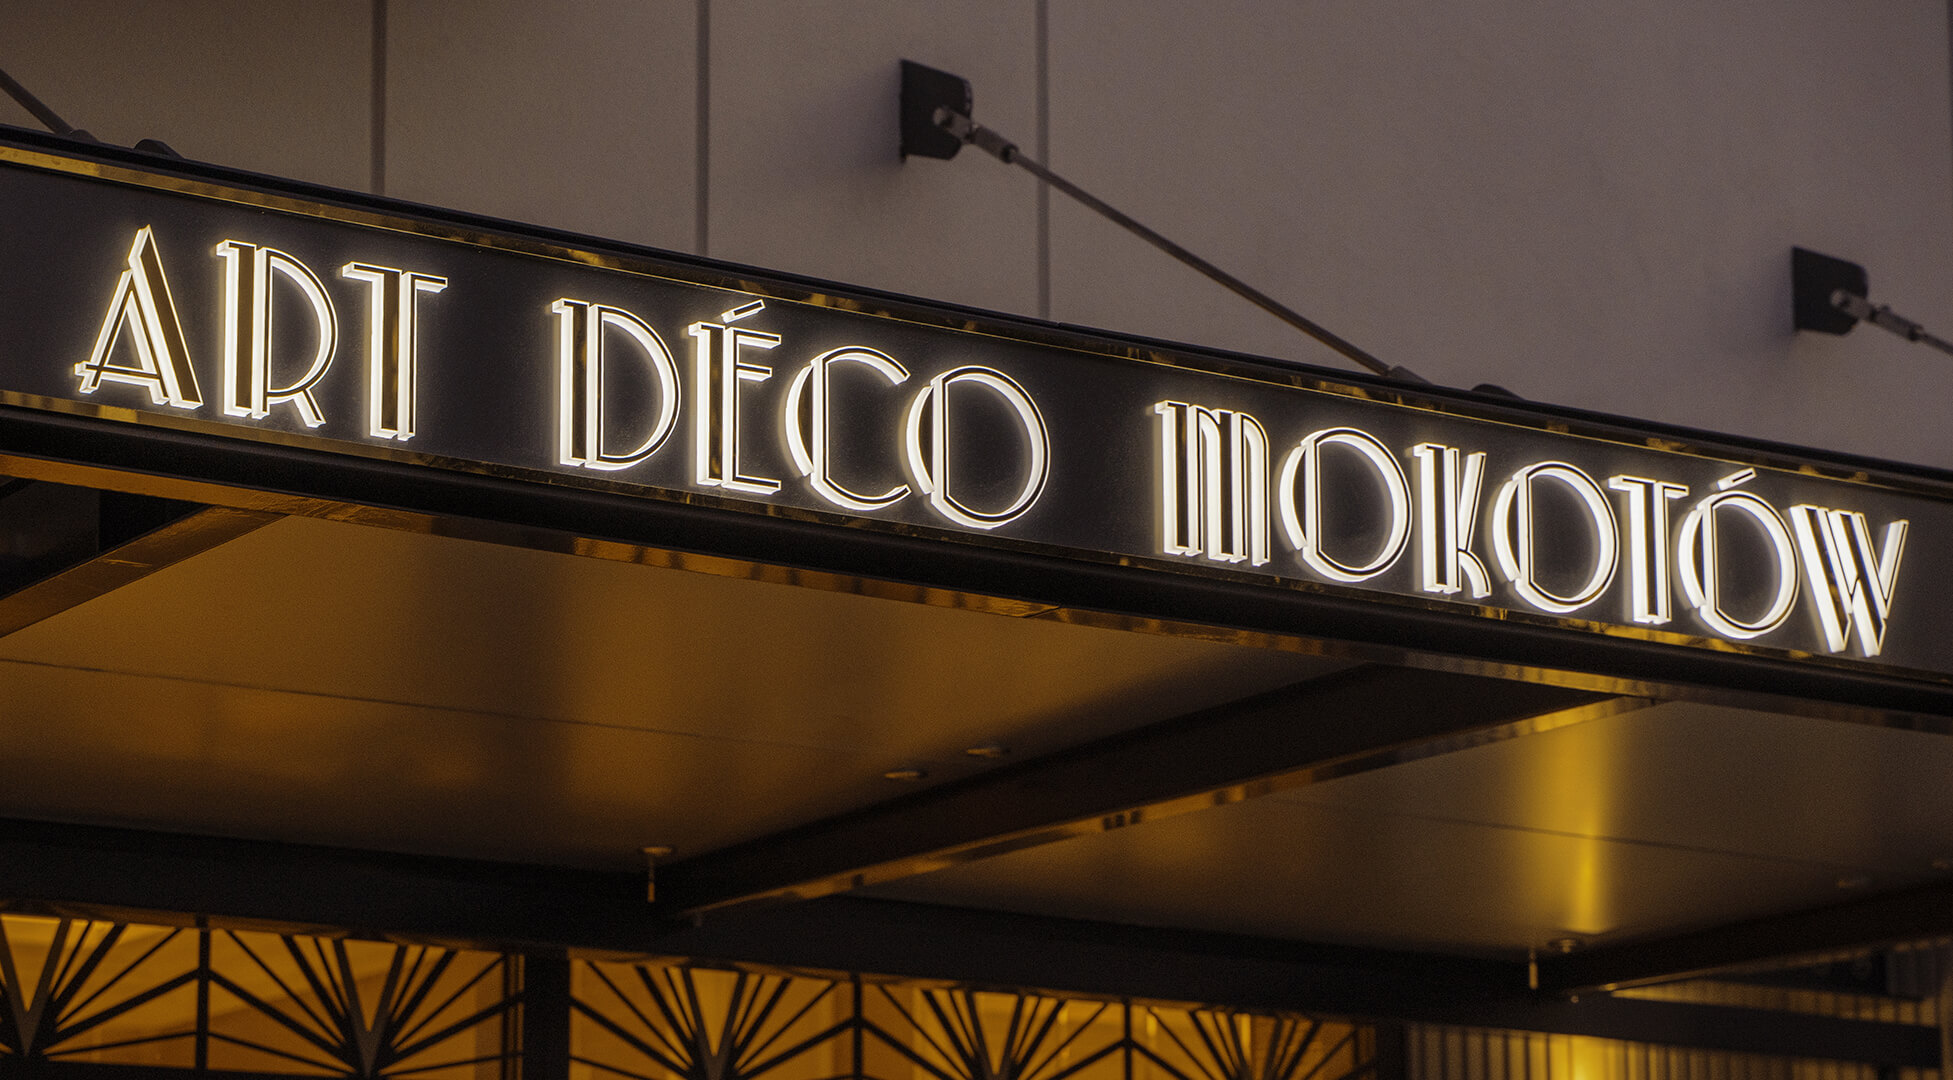 Art Deco Mokotów - Cassetta in dibond color oro sopra l'ingresso Art Deco di Mokotow, retroilluminata a LED.